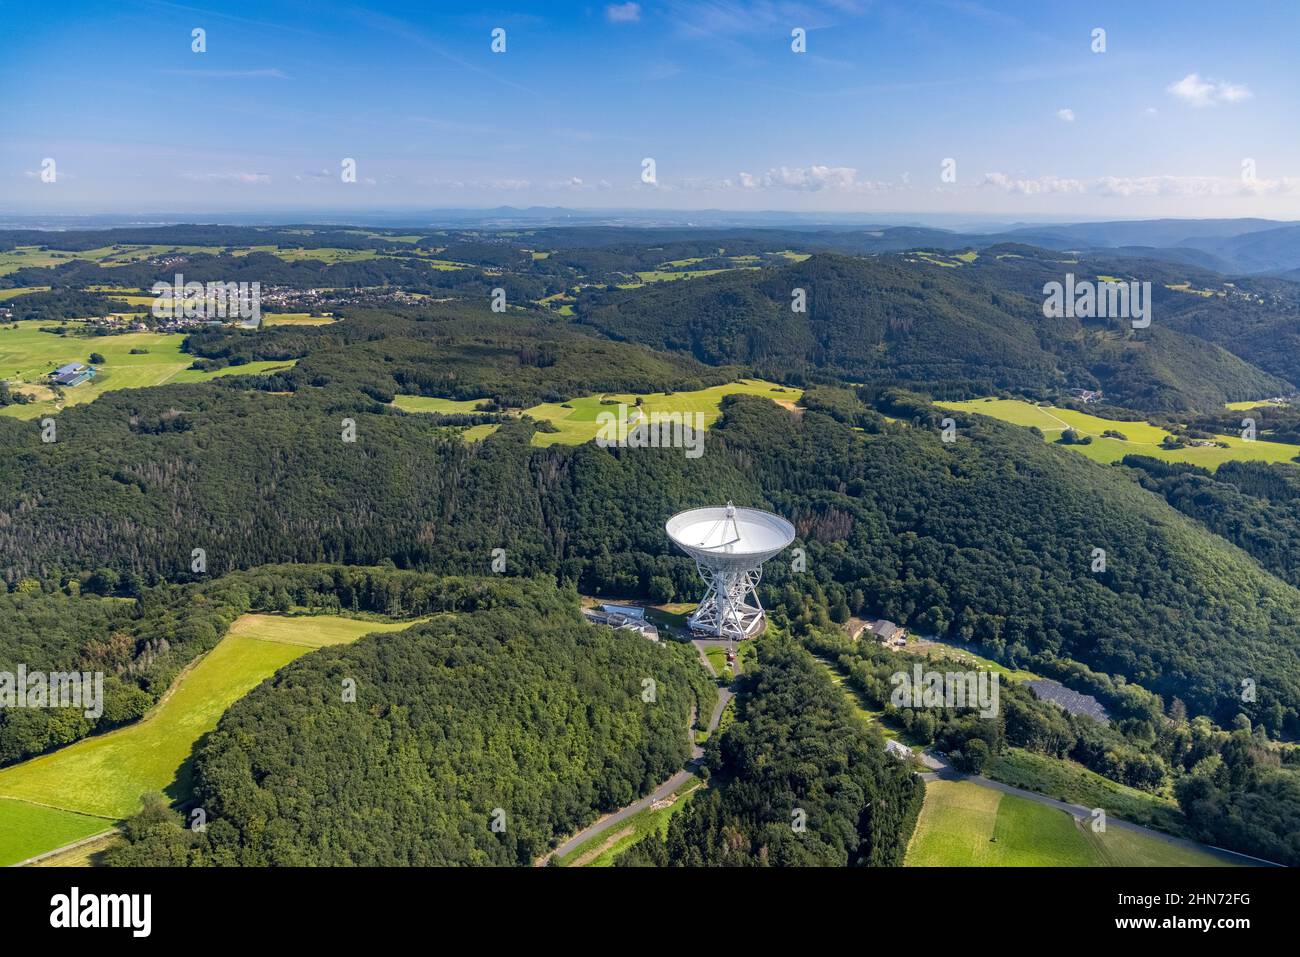 Vista aérea, radiotelescopio Effelsberg en el Ahrgebirge en Holzem, Bad Münstereifel, inundación Ahr, valle Ahr, Renania del Norte-Westfalia, Alemania, DE, EIF Foto de stock